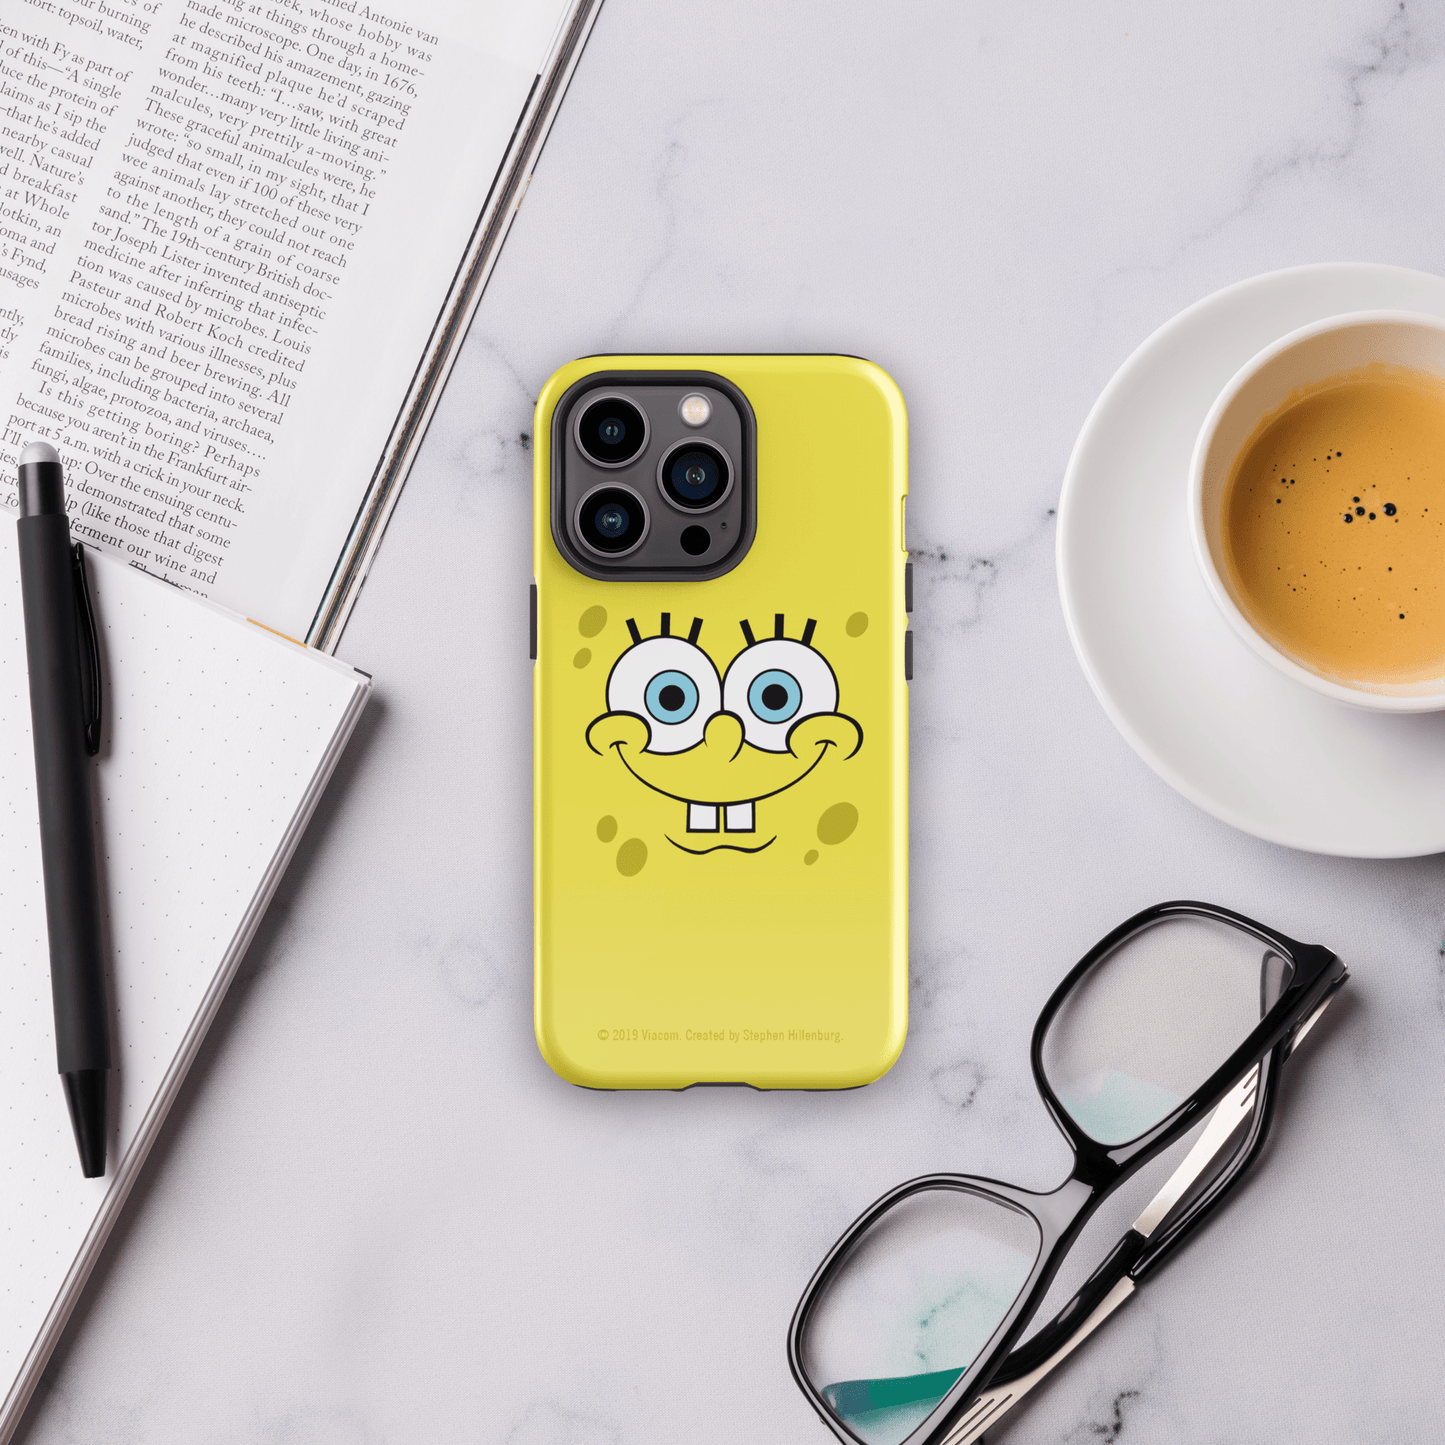 SpongeBob SquarePants Happy Face Tough Phone Case - iPhone - Paramount Shop